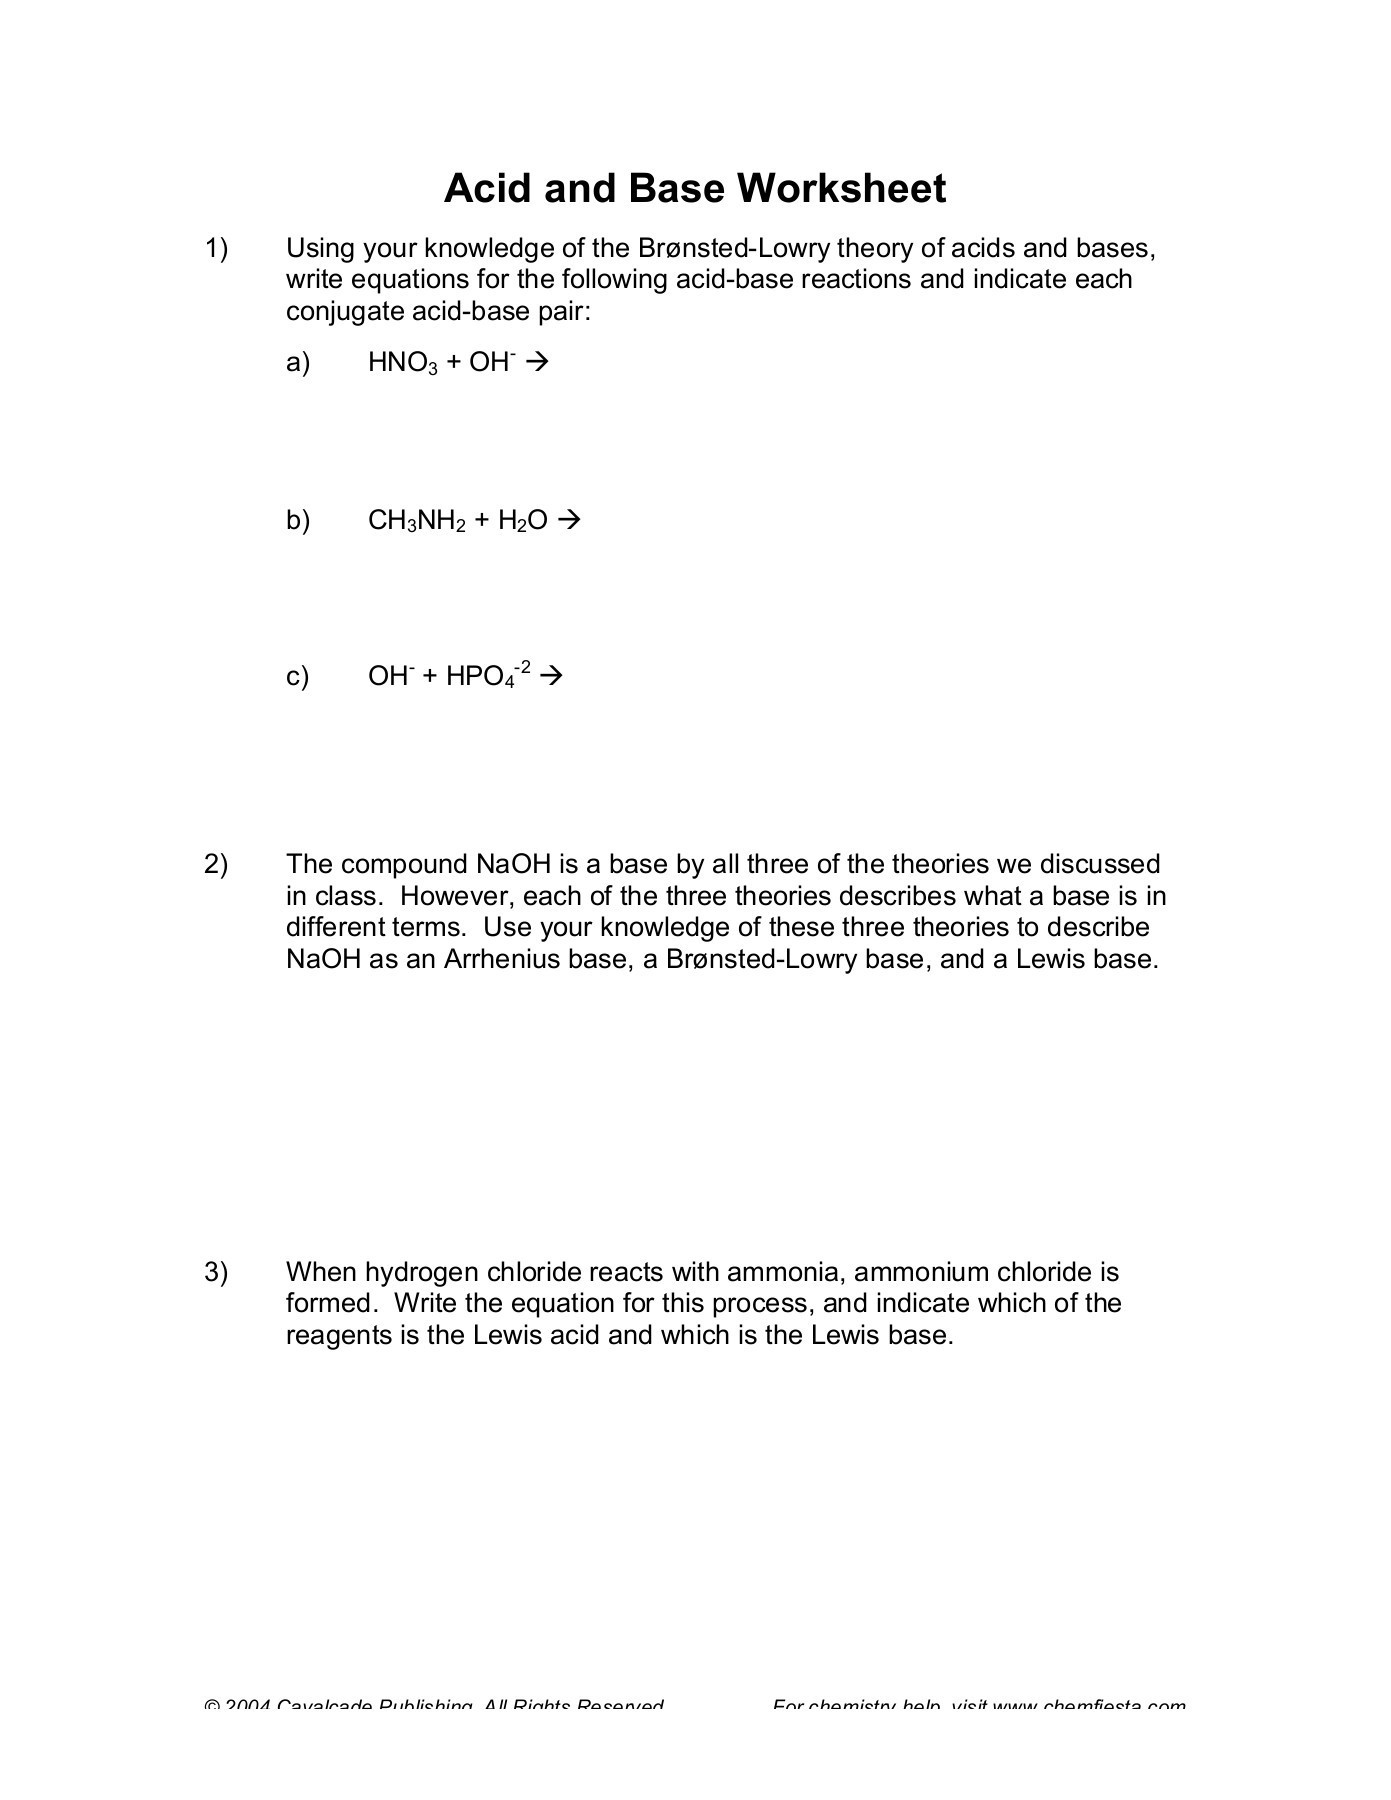 Acids and Bases Worksheet Acid and Base Worksheet Edmond Public Schools Pages 1 4